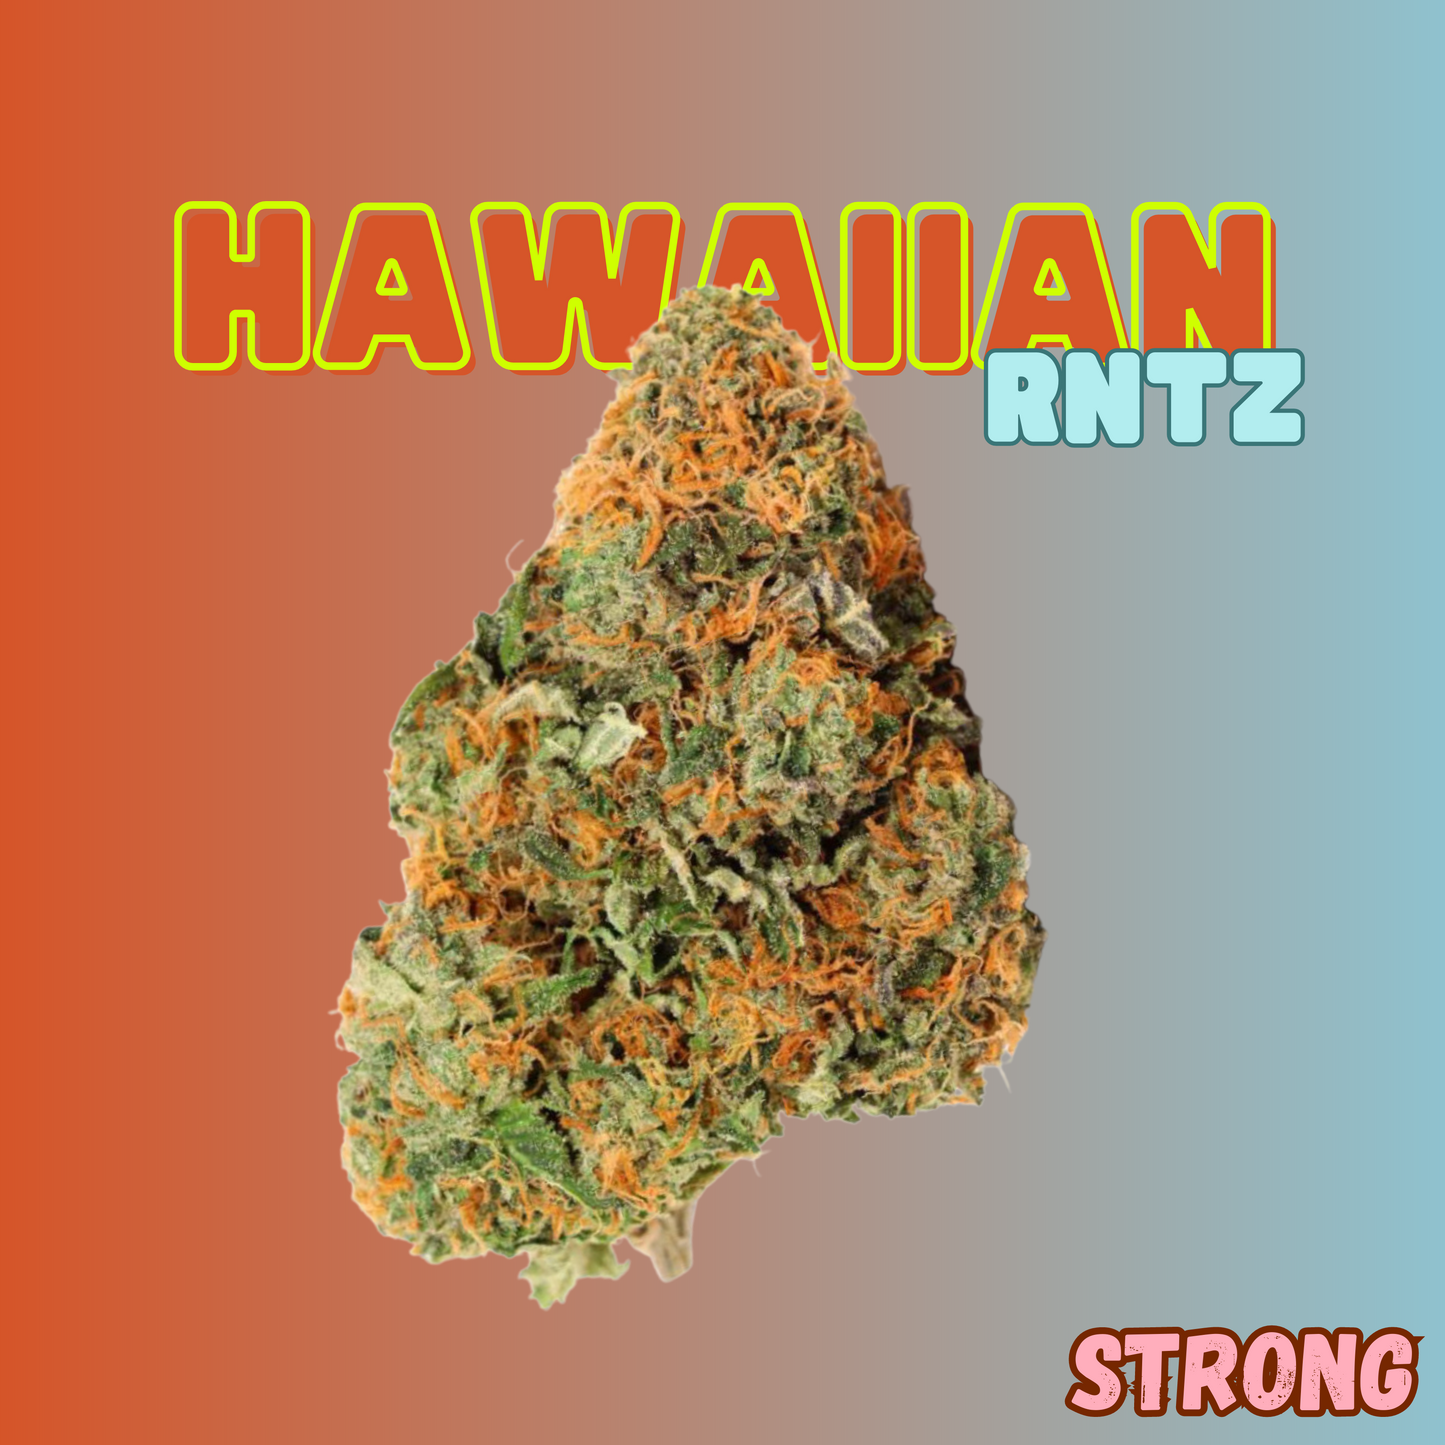 Hawaiian Runtz